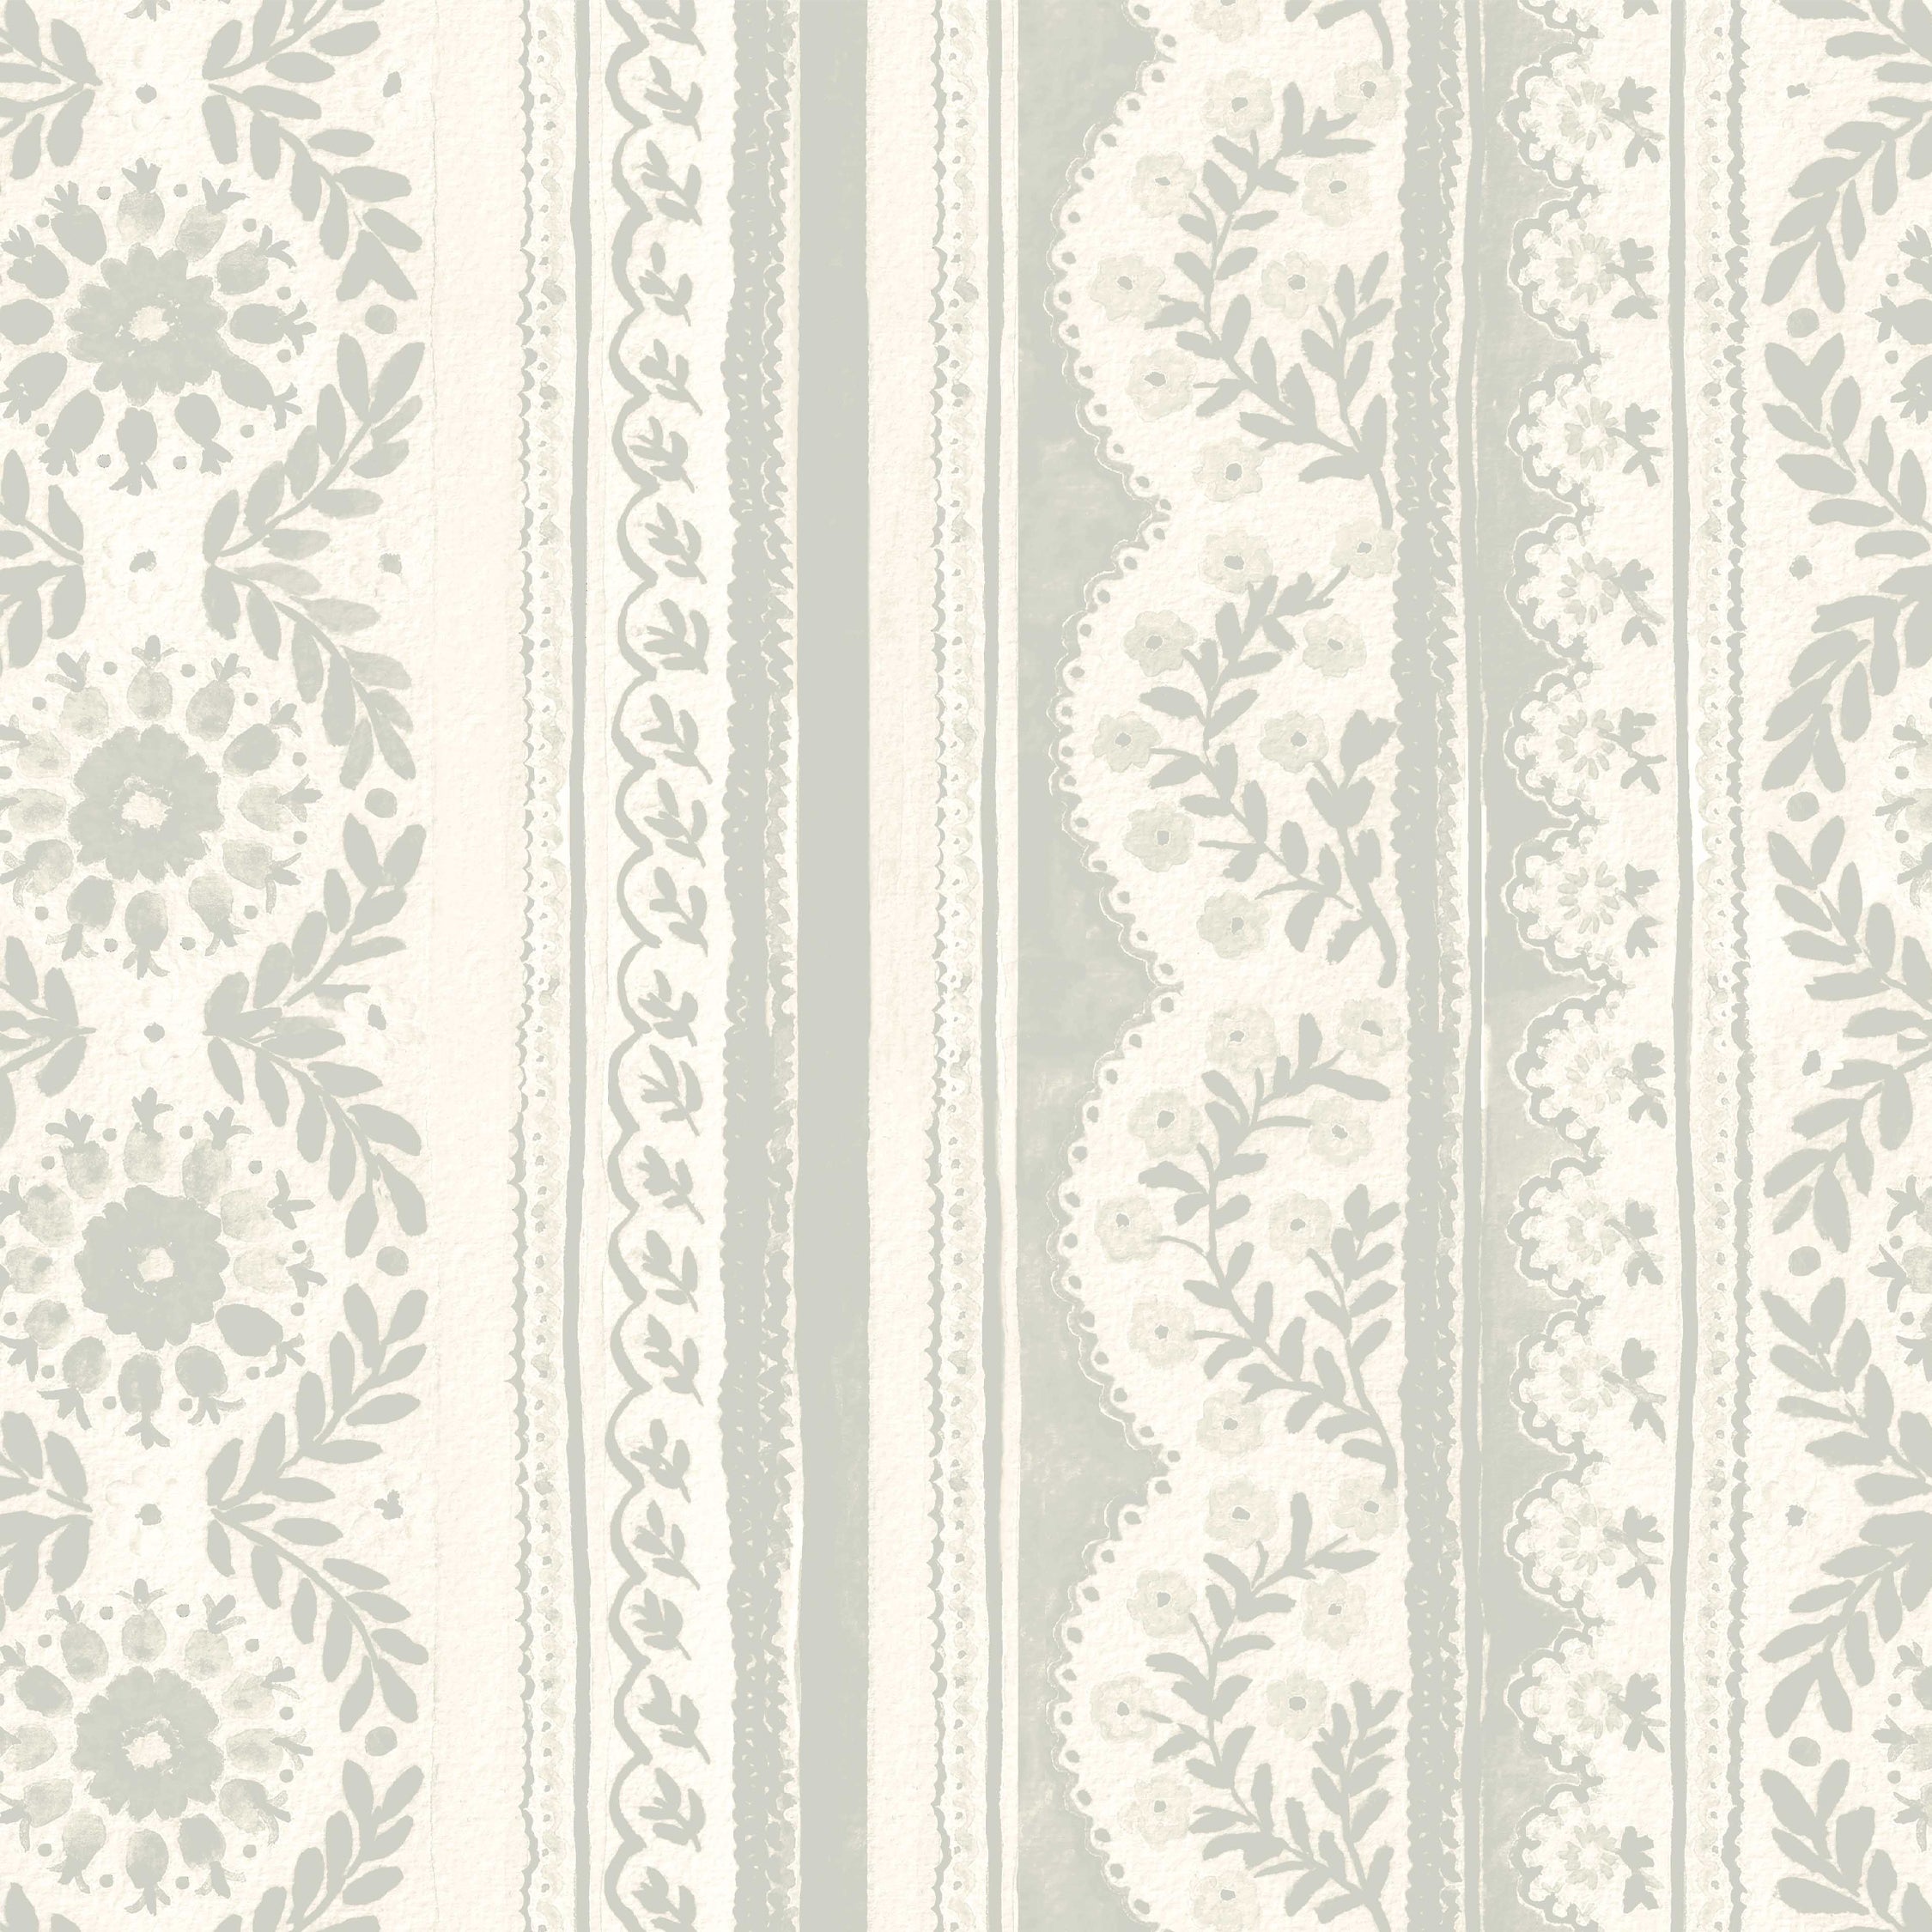 The Duchess Wallpaper